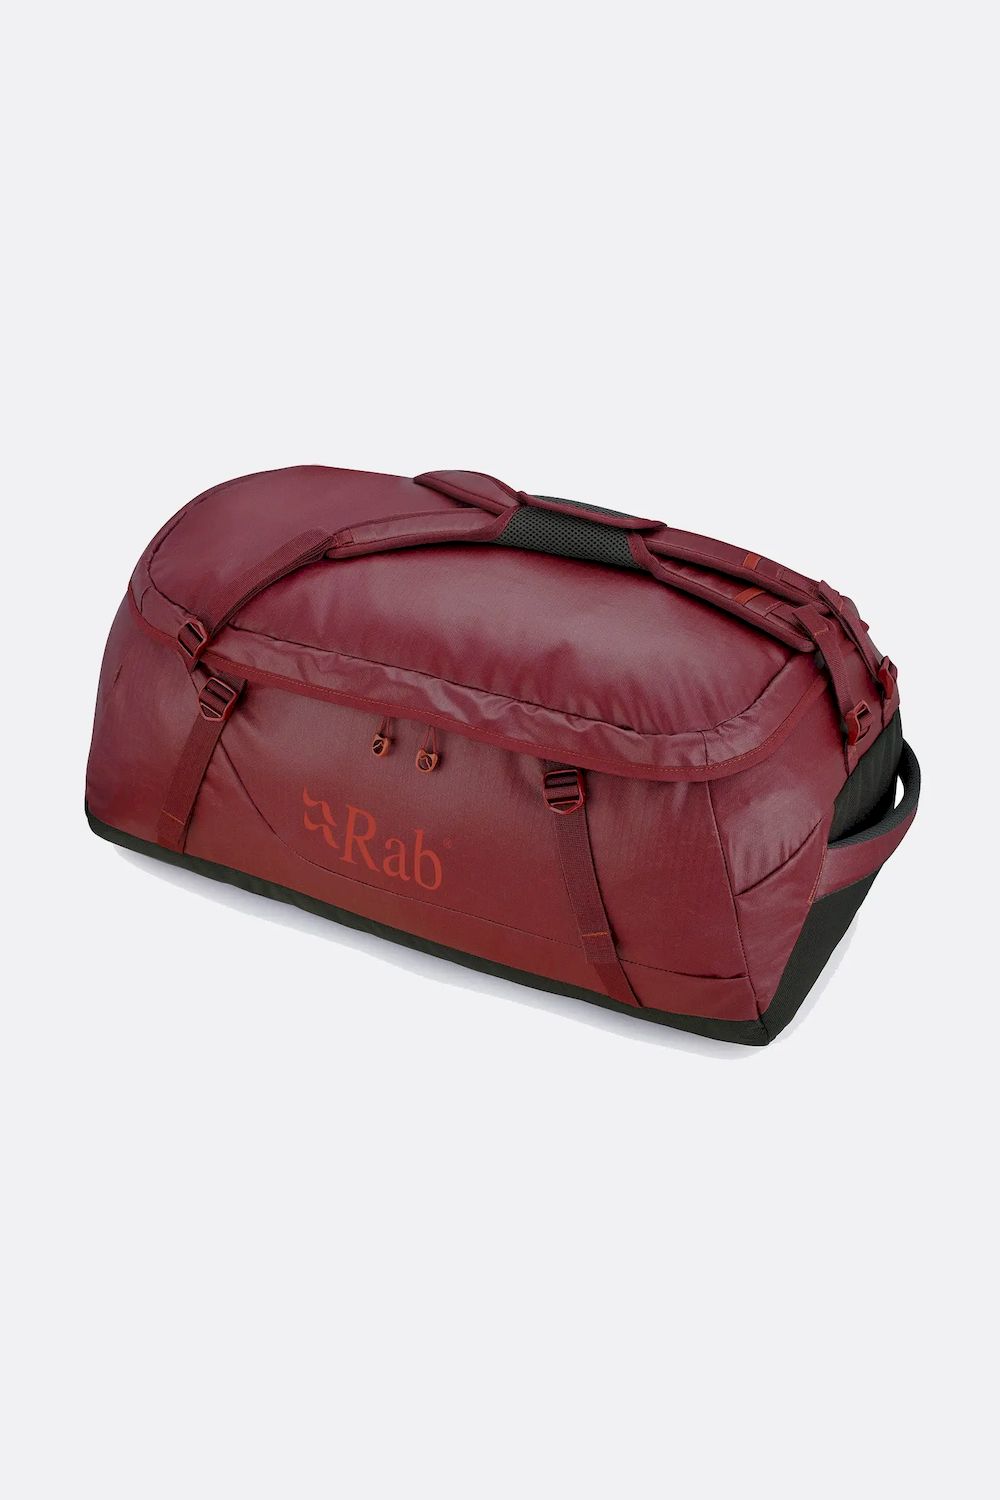 Rab Escape Kit Bag LT 90 - Sac à dos de voyage